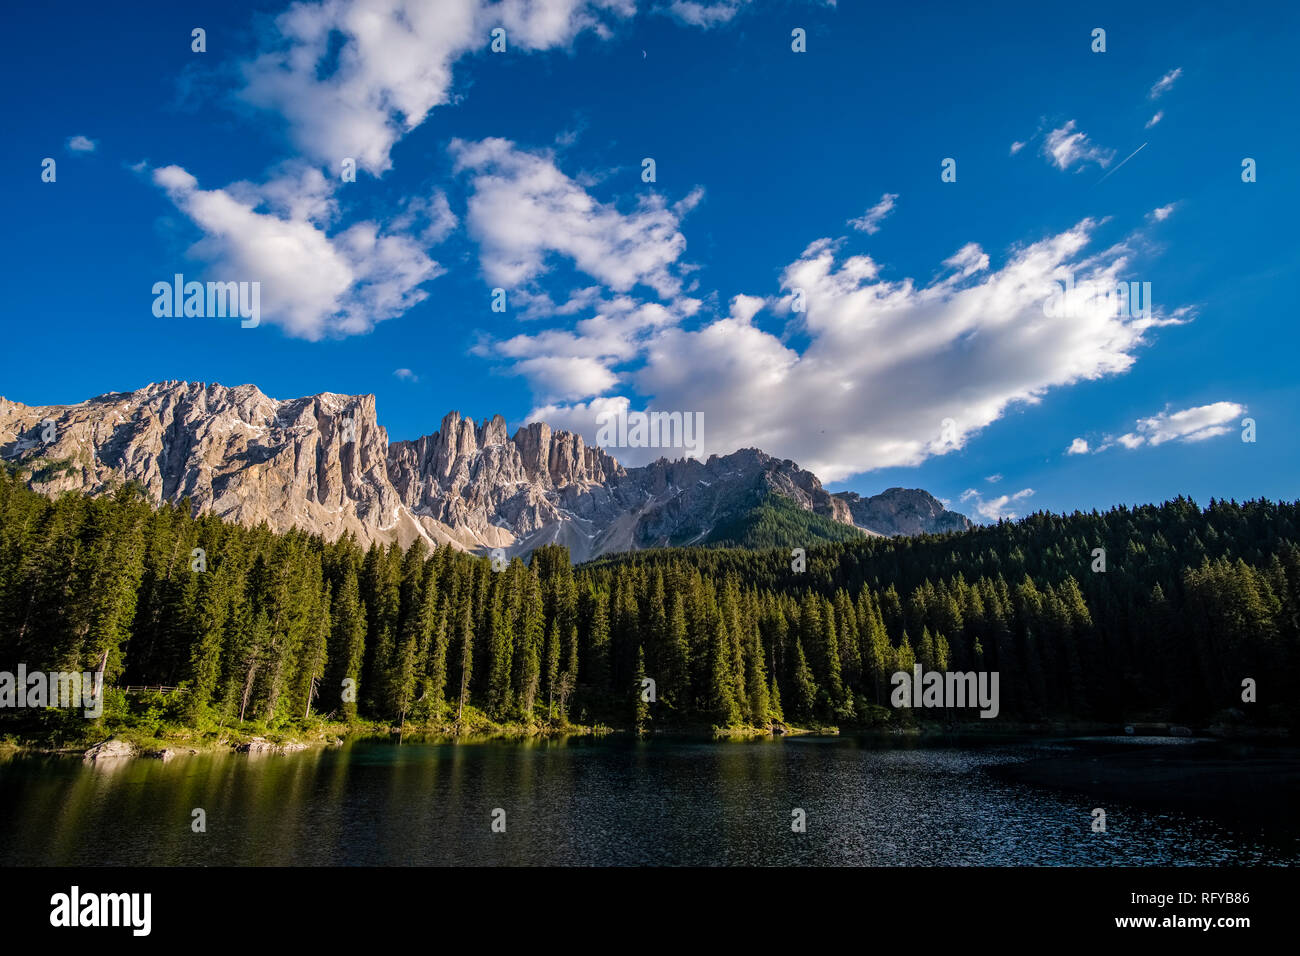 The Latemar mountain, mirroring in the lake Karersee, Lago di Carezza Stock Photo